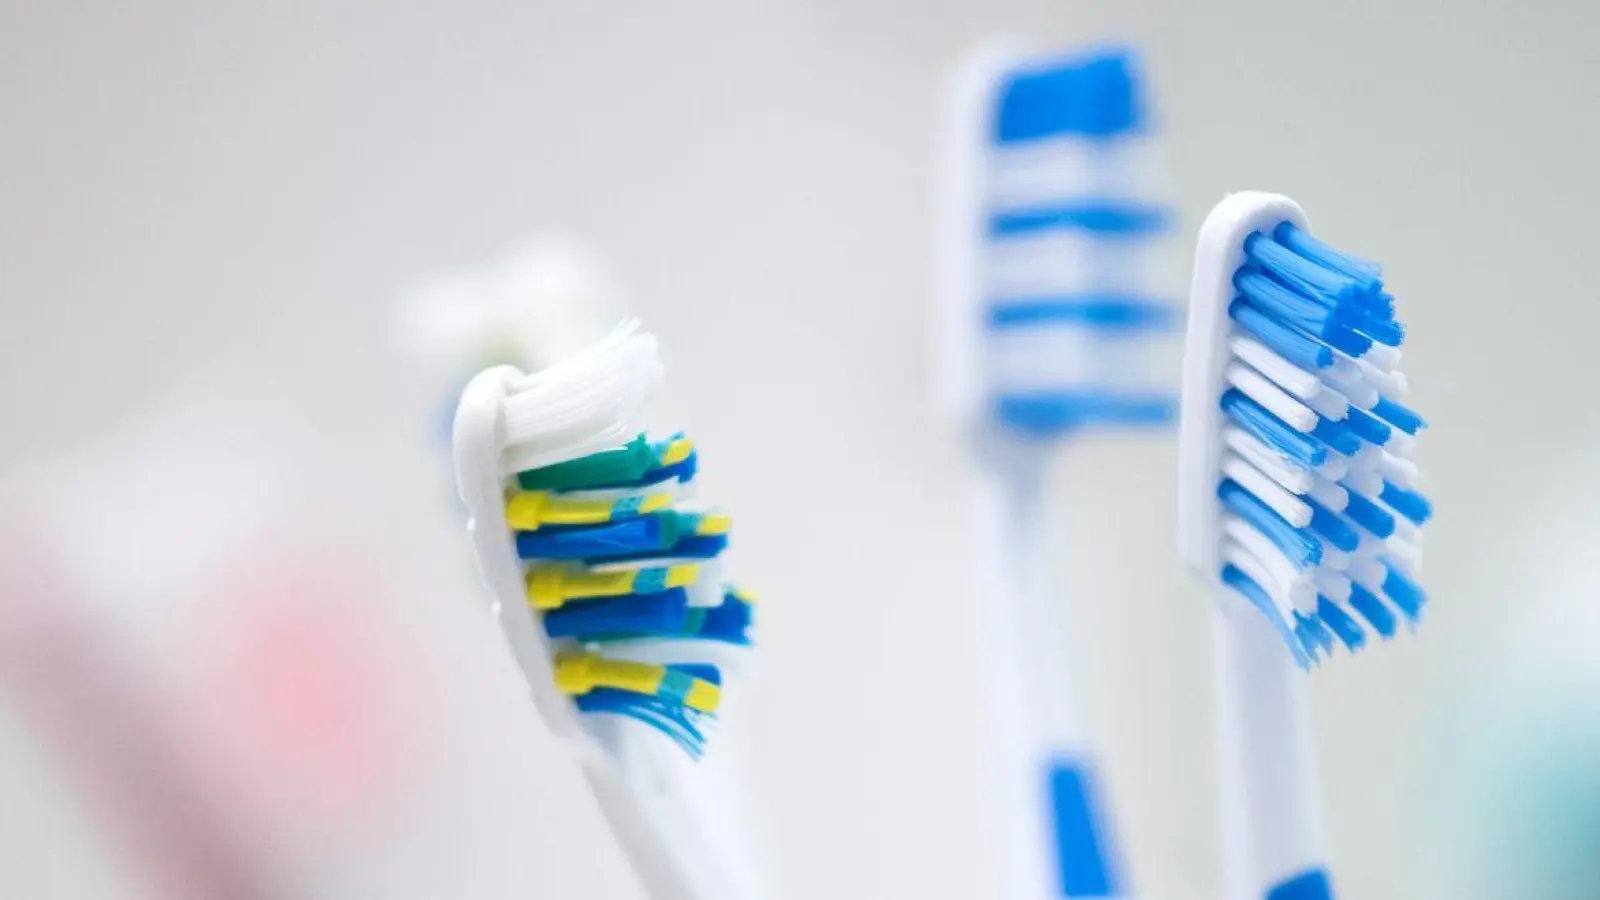 Manche Menschen brauchen Hilfe beim Zähneputzen, hier sind individuelle Lösungen entscheidend, z.B. die Wahl zwischen Hand- oder elektrischer Zahnbürste je nach Bedürfnis des Gegenübers. (Foto: Andrea Warnecke/dpa-tmn)